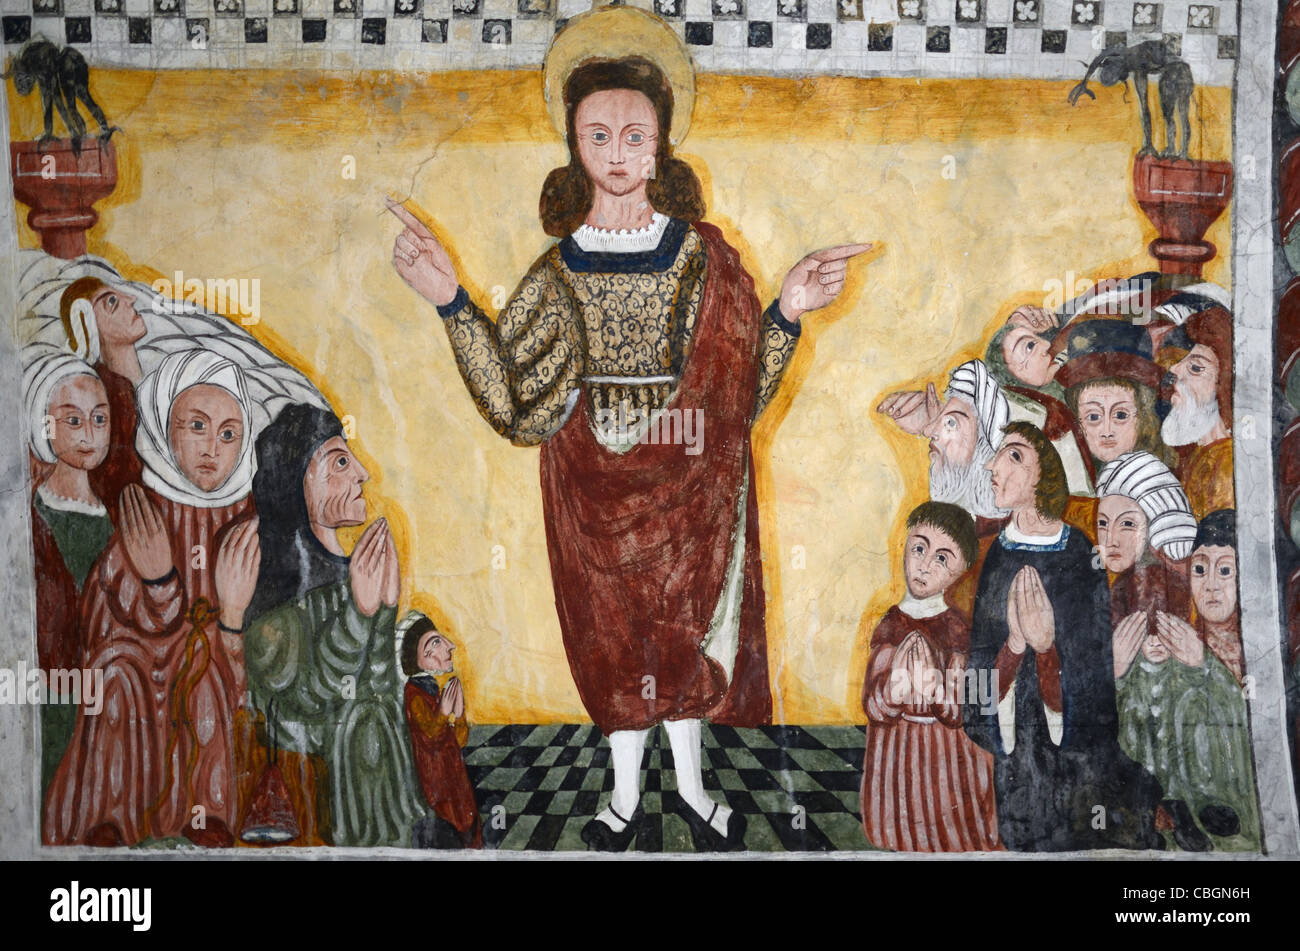 Saint-Sébastien prêchant, fresque ou peinture murale dans la chapelle rurale de Saint-Sébastien (1513), Roubion, Alpes-Maritimes, France Banque D'Images